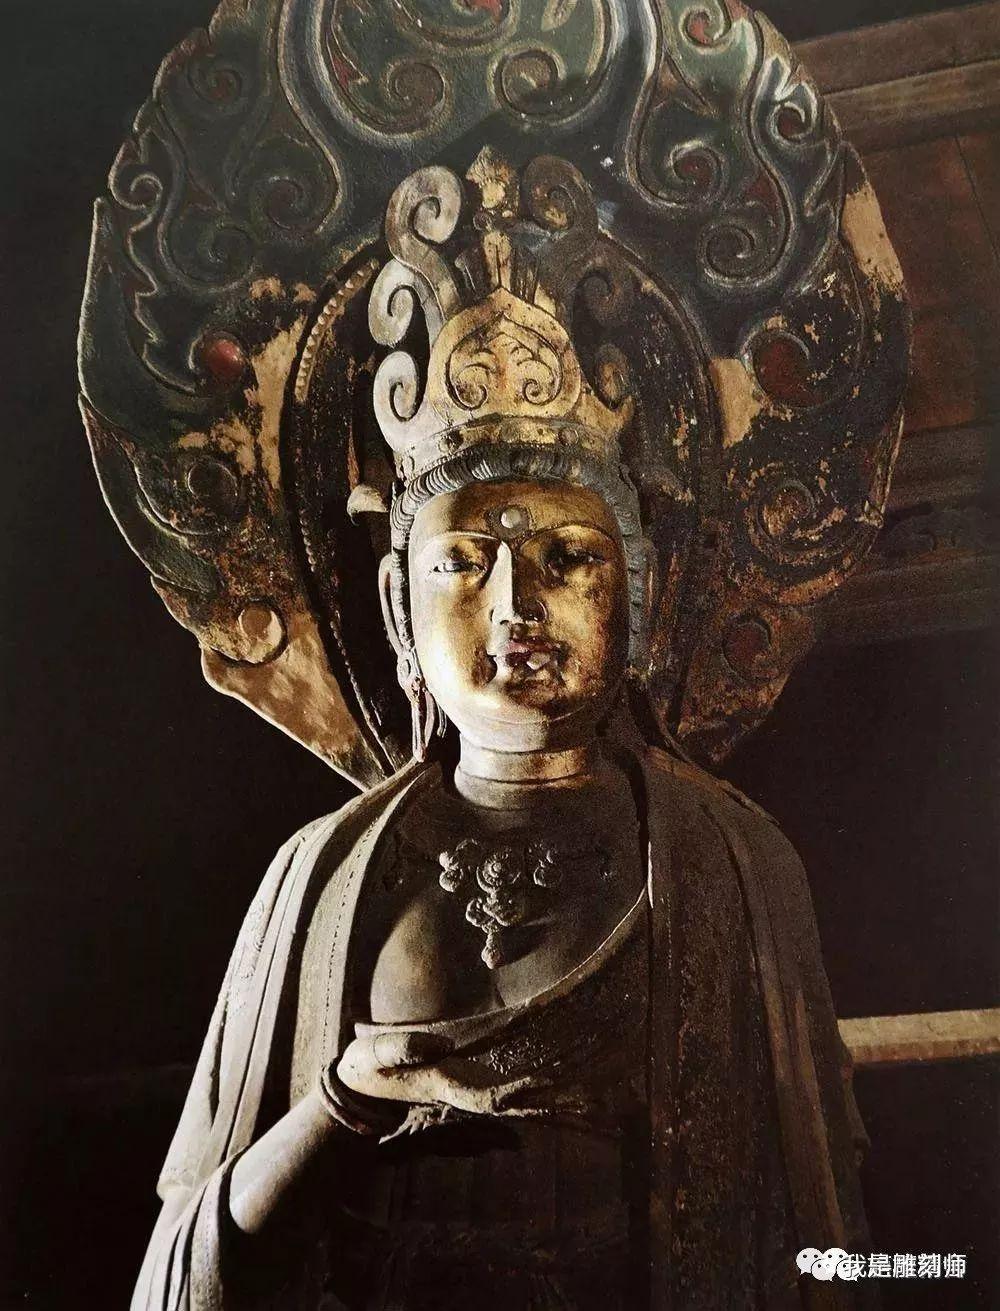 我是雕刻师如何欣赏中国佛教雕塑之美